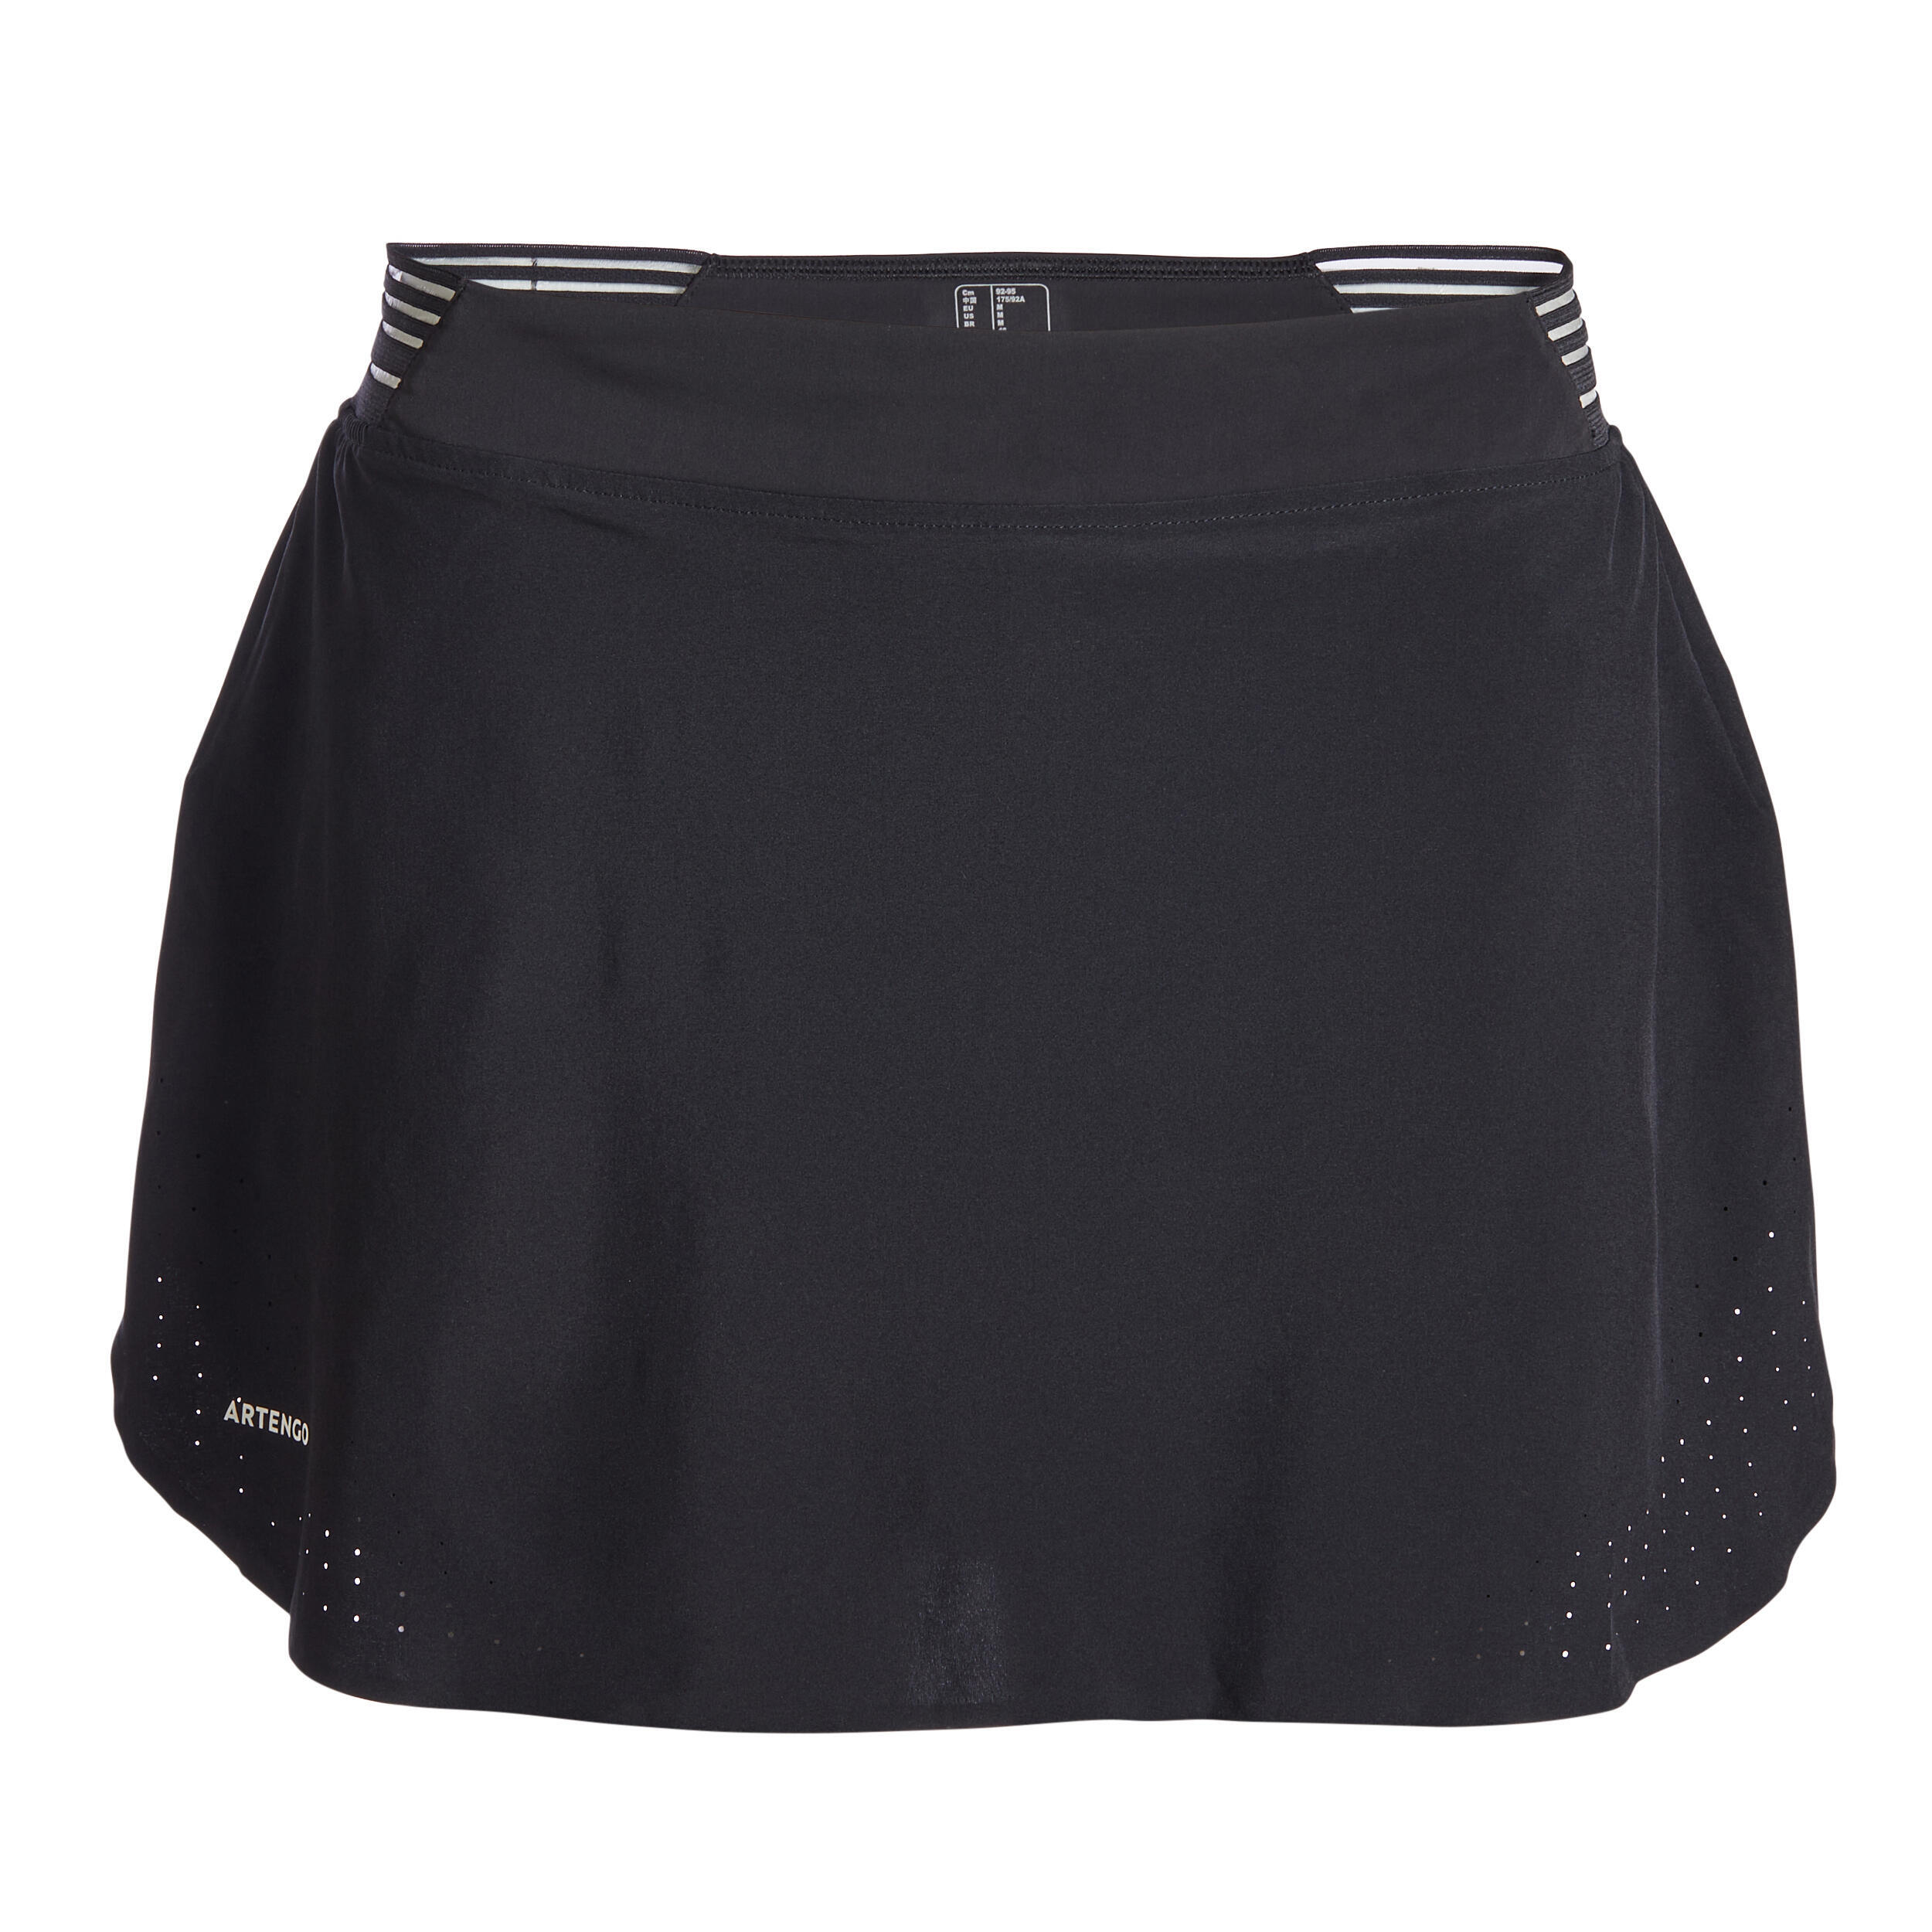 Refurbished Womens Tennis Skirt Light 900 - A Grade 1/7